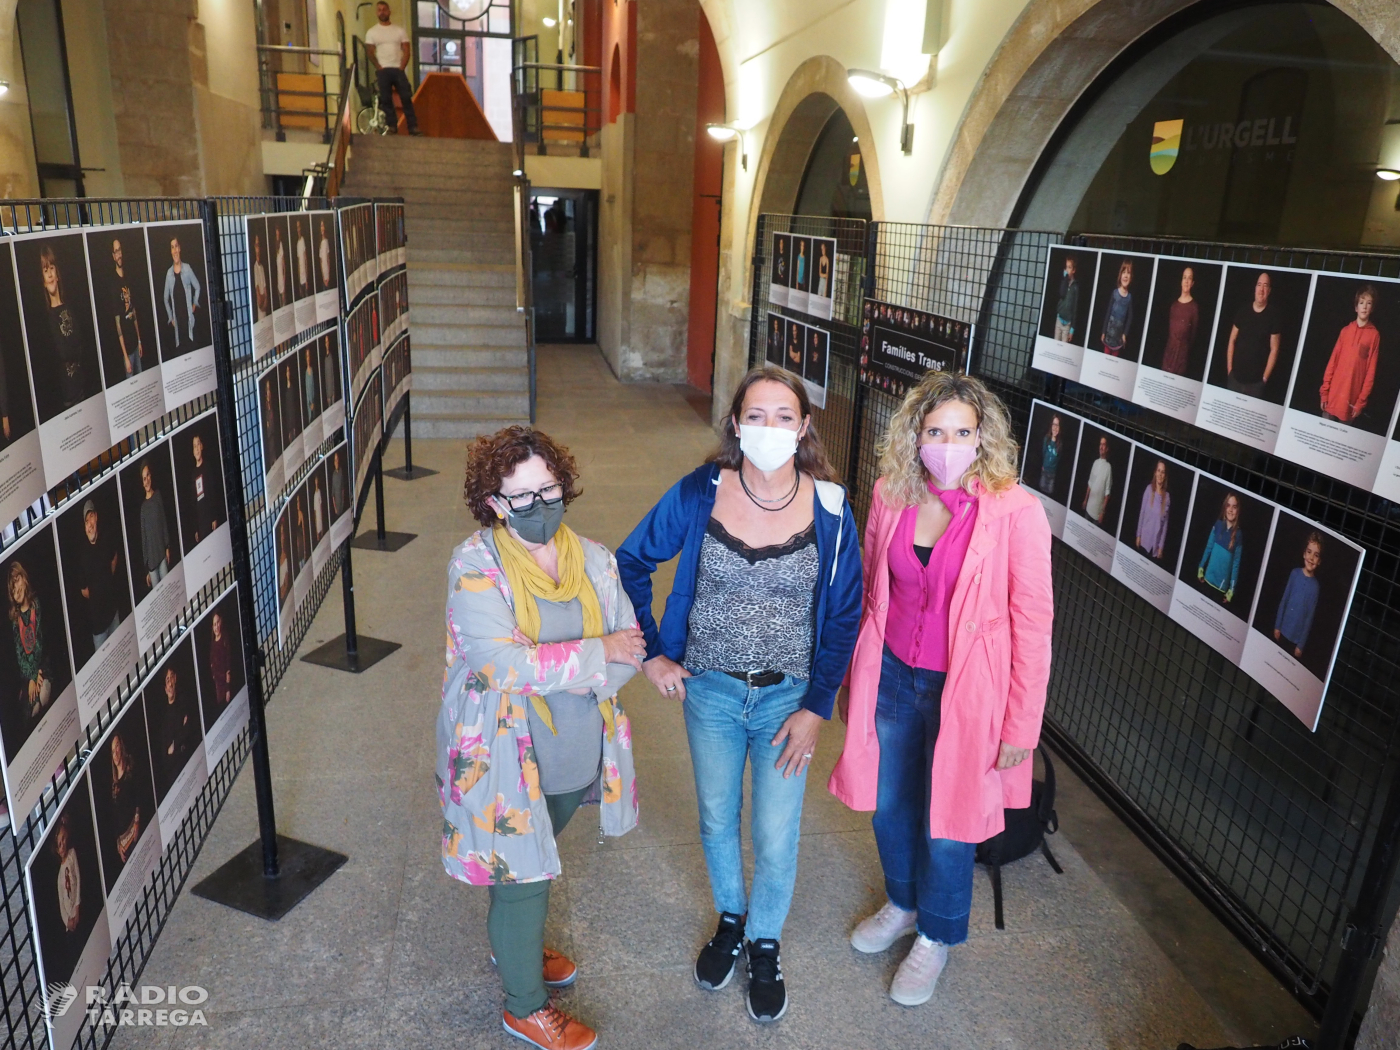 El Consell Comarcal de l'Urgell acull l'exposició 'Famílies Trans Construccions Identitàries" de l'activista i fotògrafa Mar C. Llop